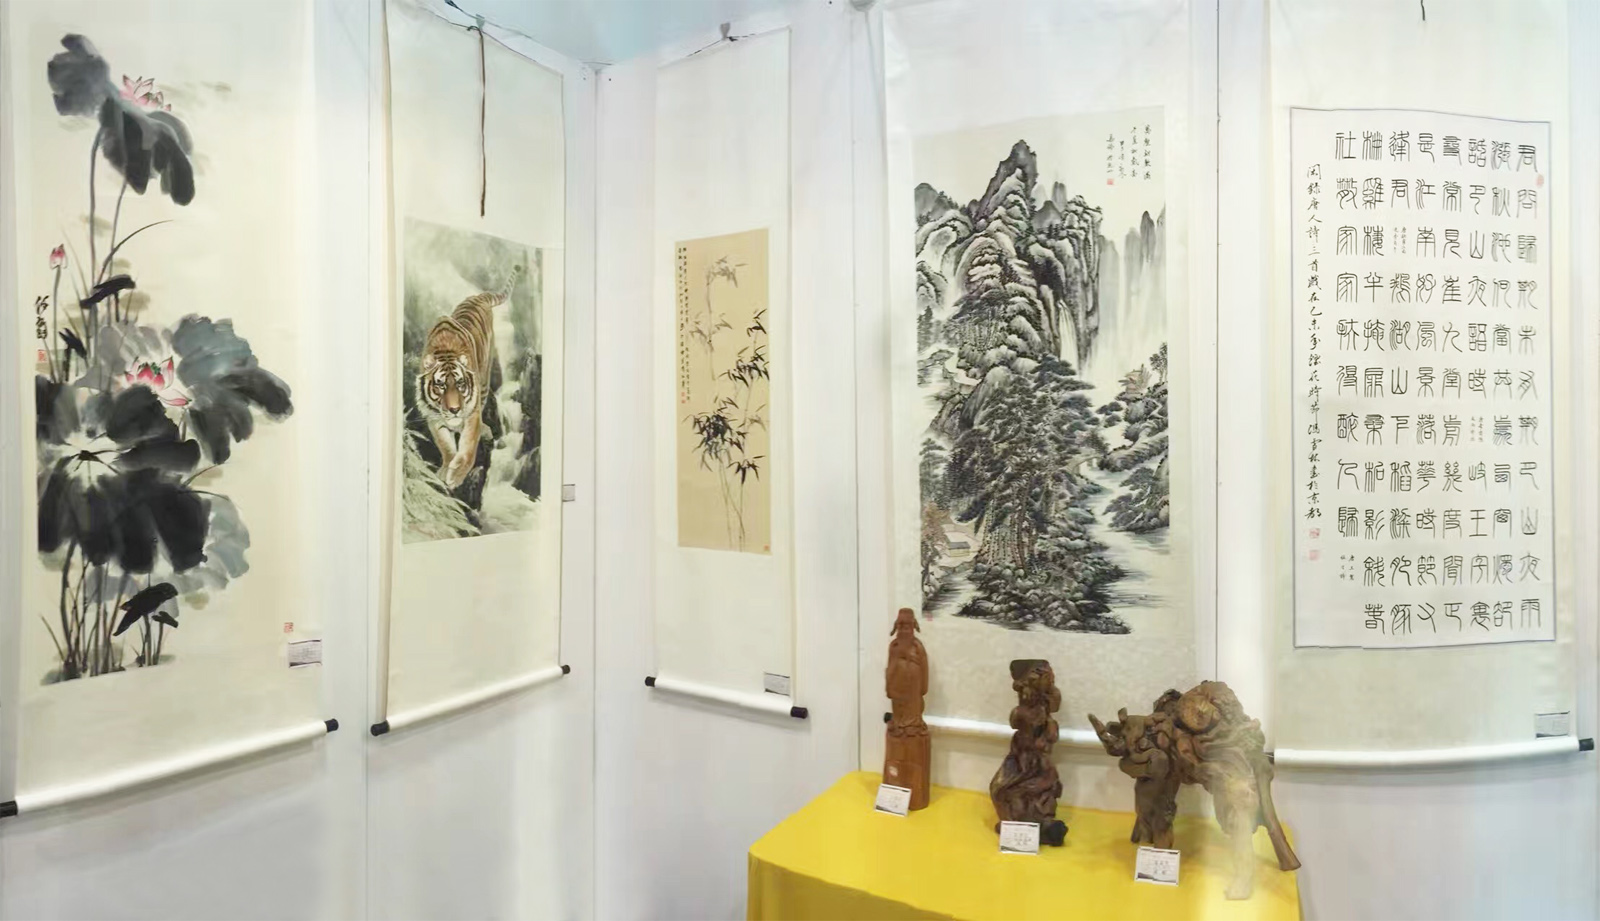 西湖艺术博览会中国当代艺术家作品 